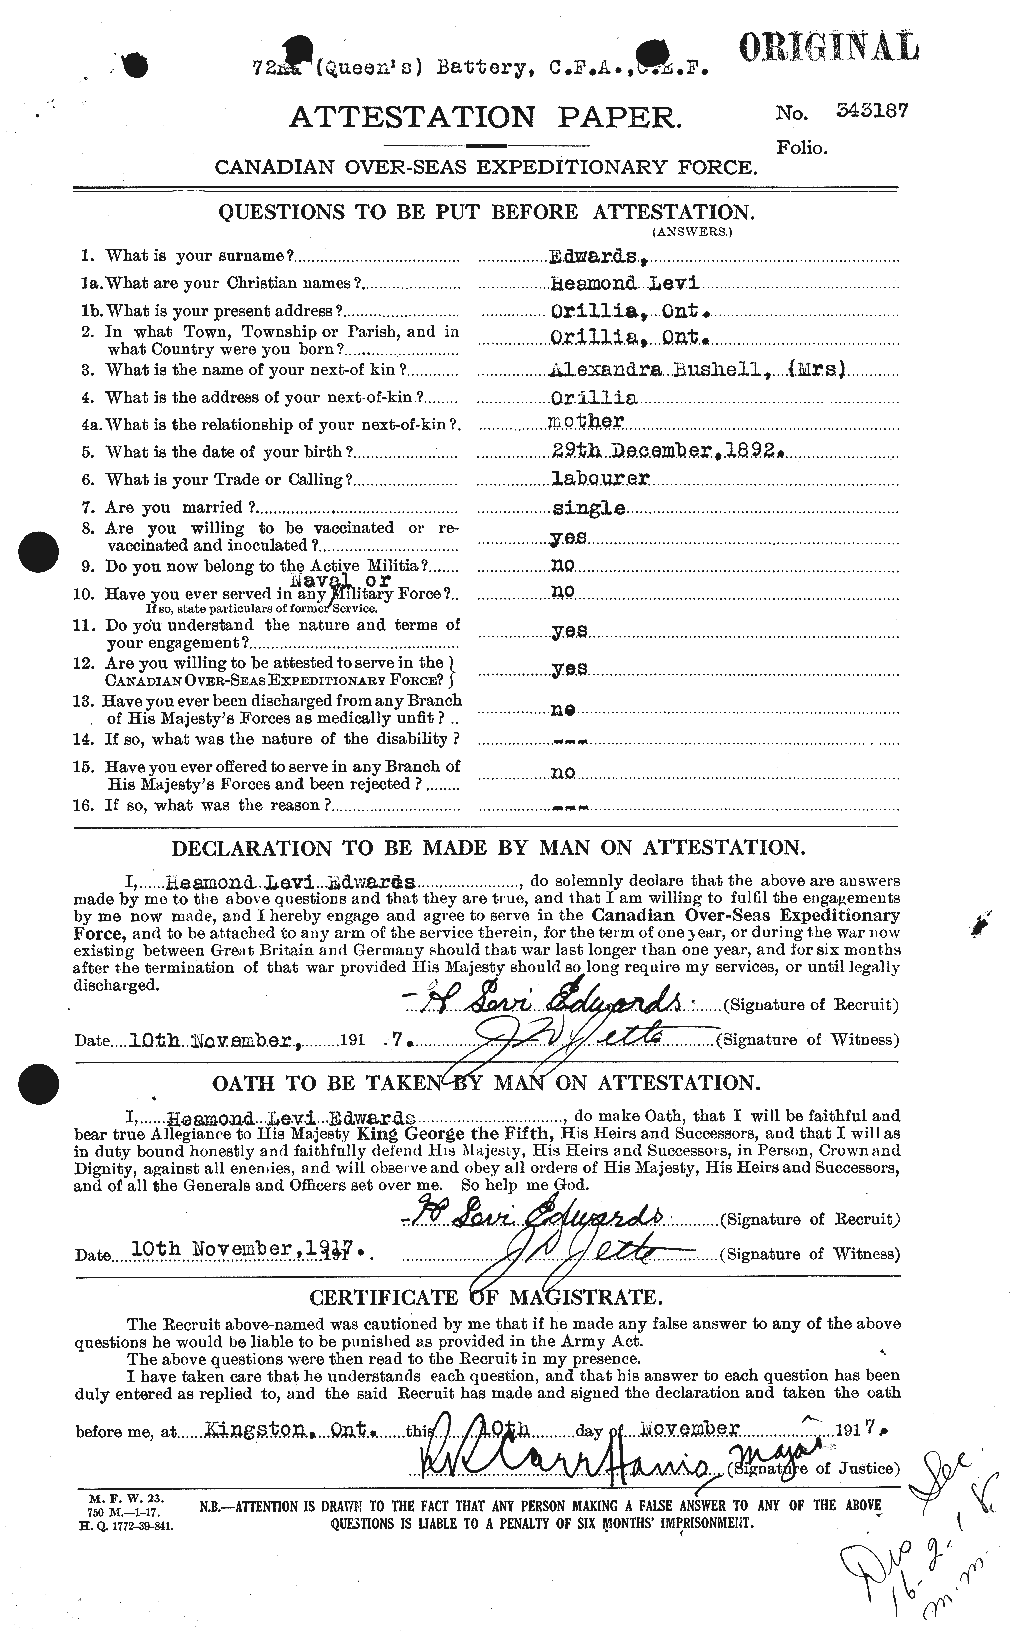 Dossiers du Personnel de la Première Guerre mondiale - CEC 309749a